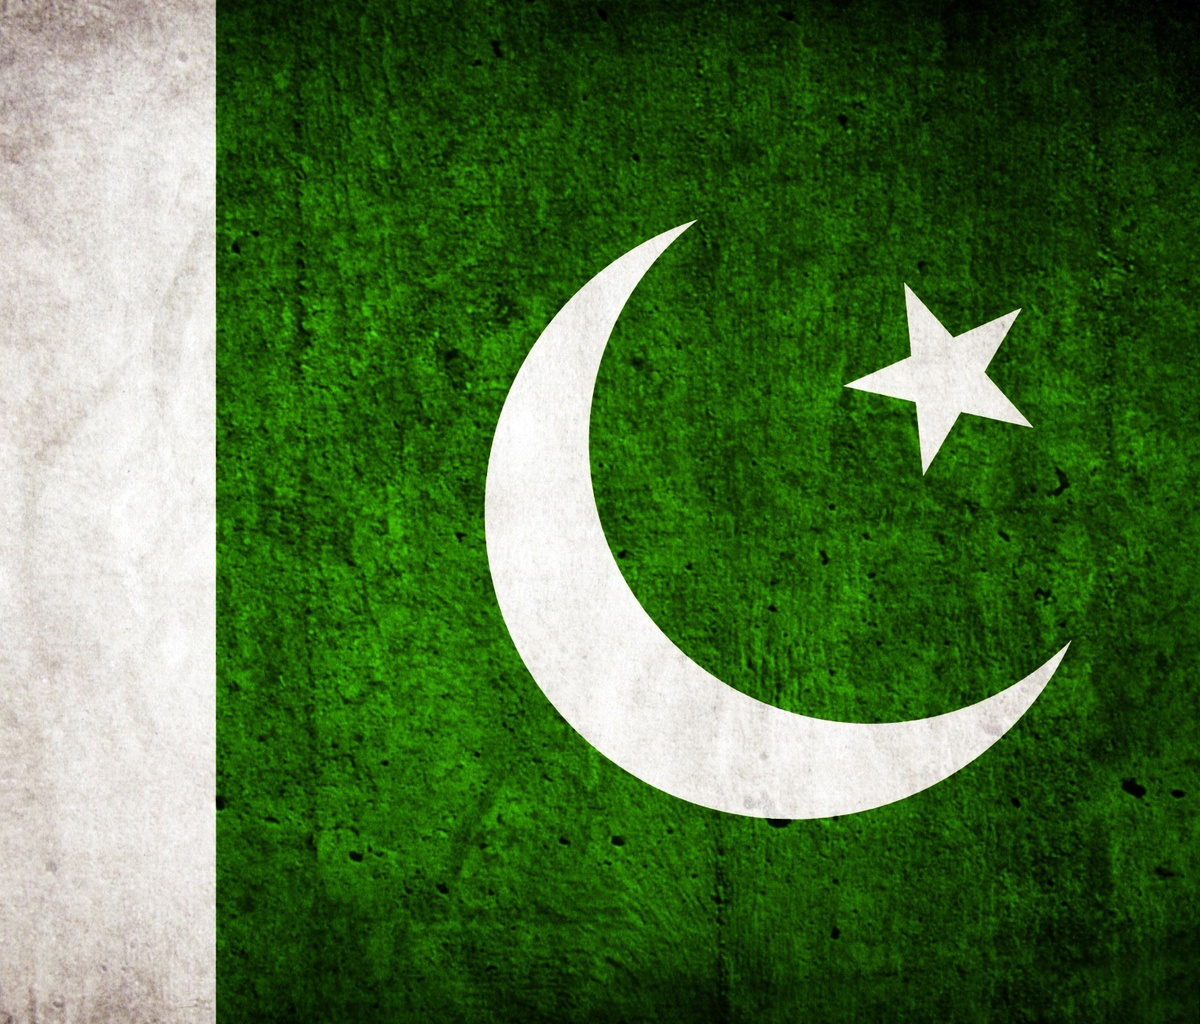 fond d'écran du drapeau du pakistan,vert,croissant,drapeau,police de caractère,herbe